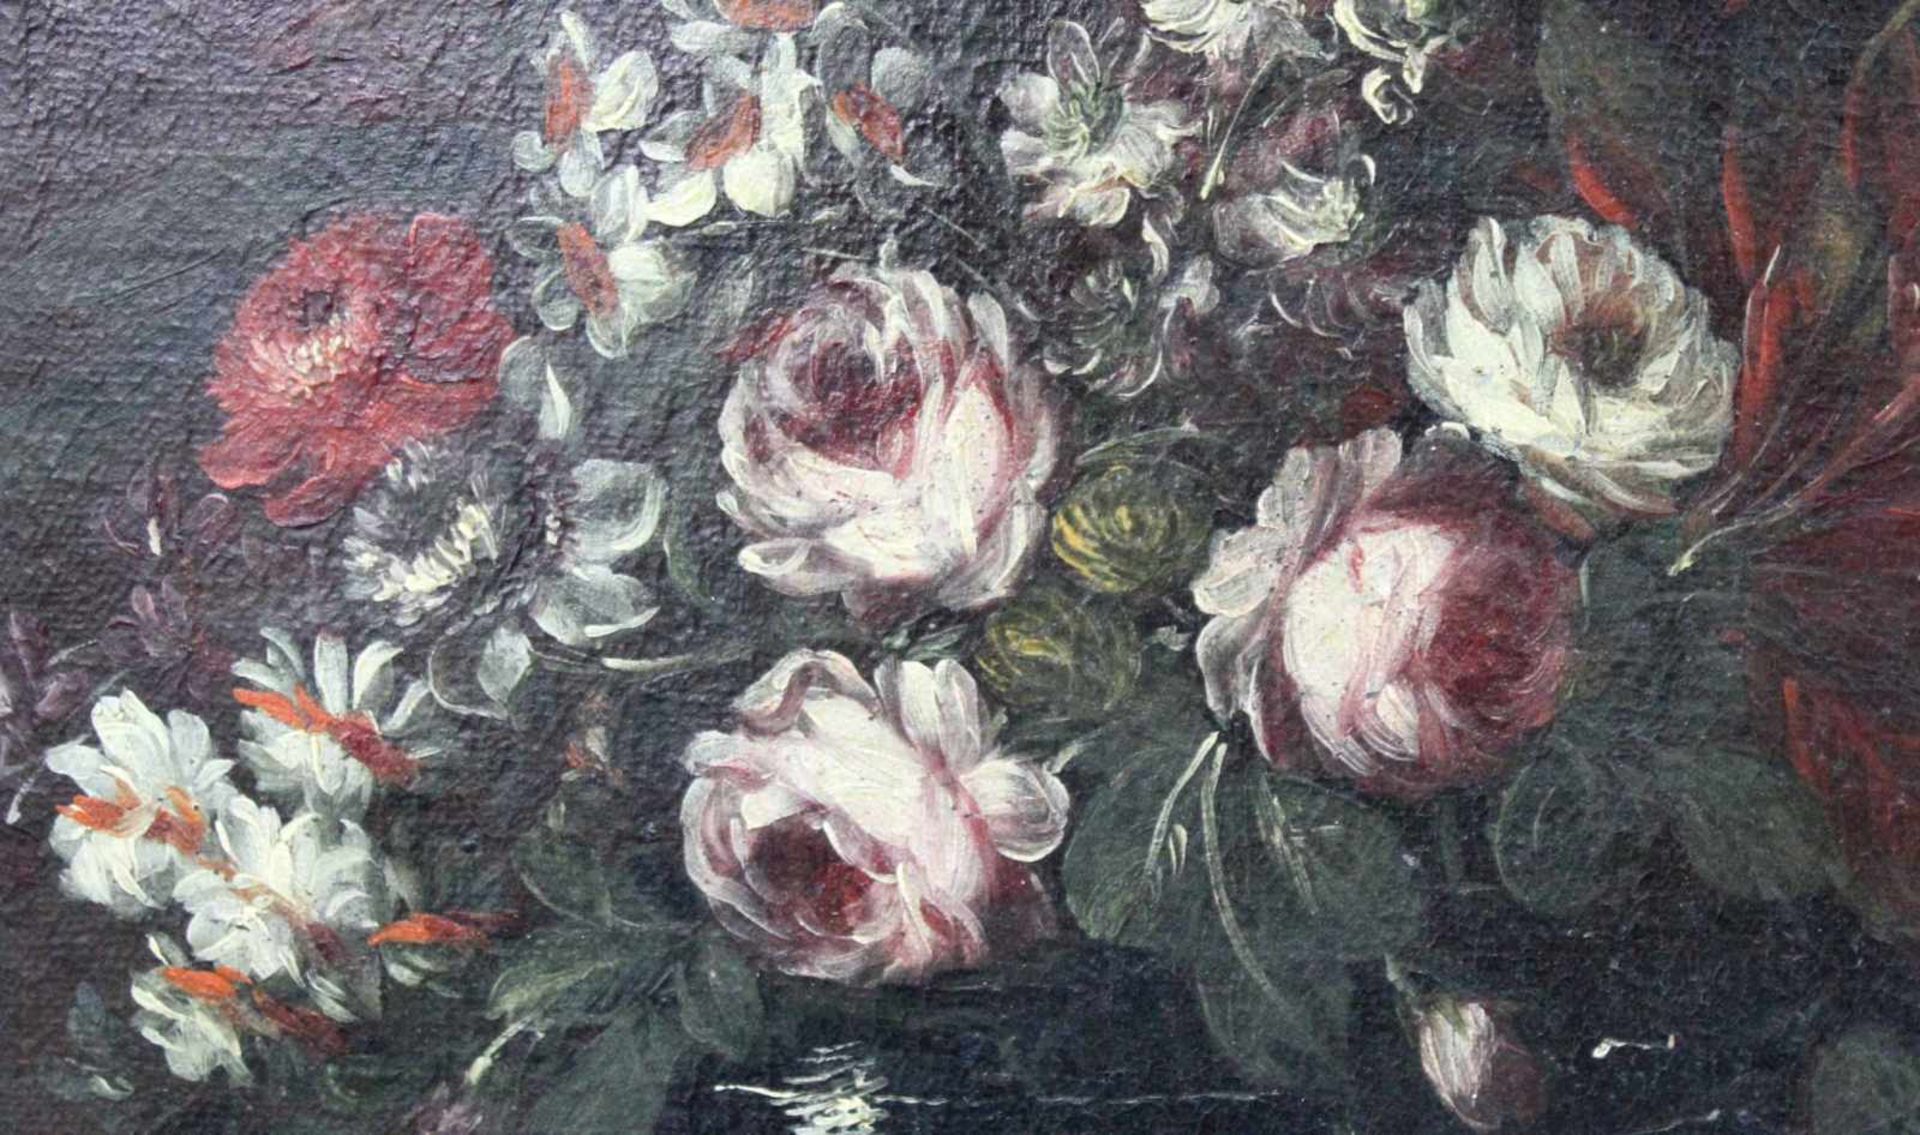 UNSIGNIERT (XVIII). Blumenstillleben. Ende 18. Jahrhundert. 53 cm x 73 cm. Gemälde, Öl auf Leinwand. - Bild 4 aus 5